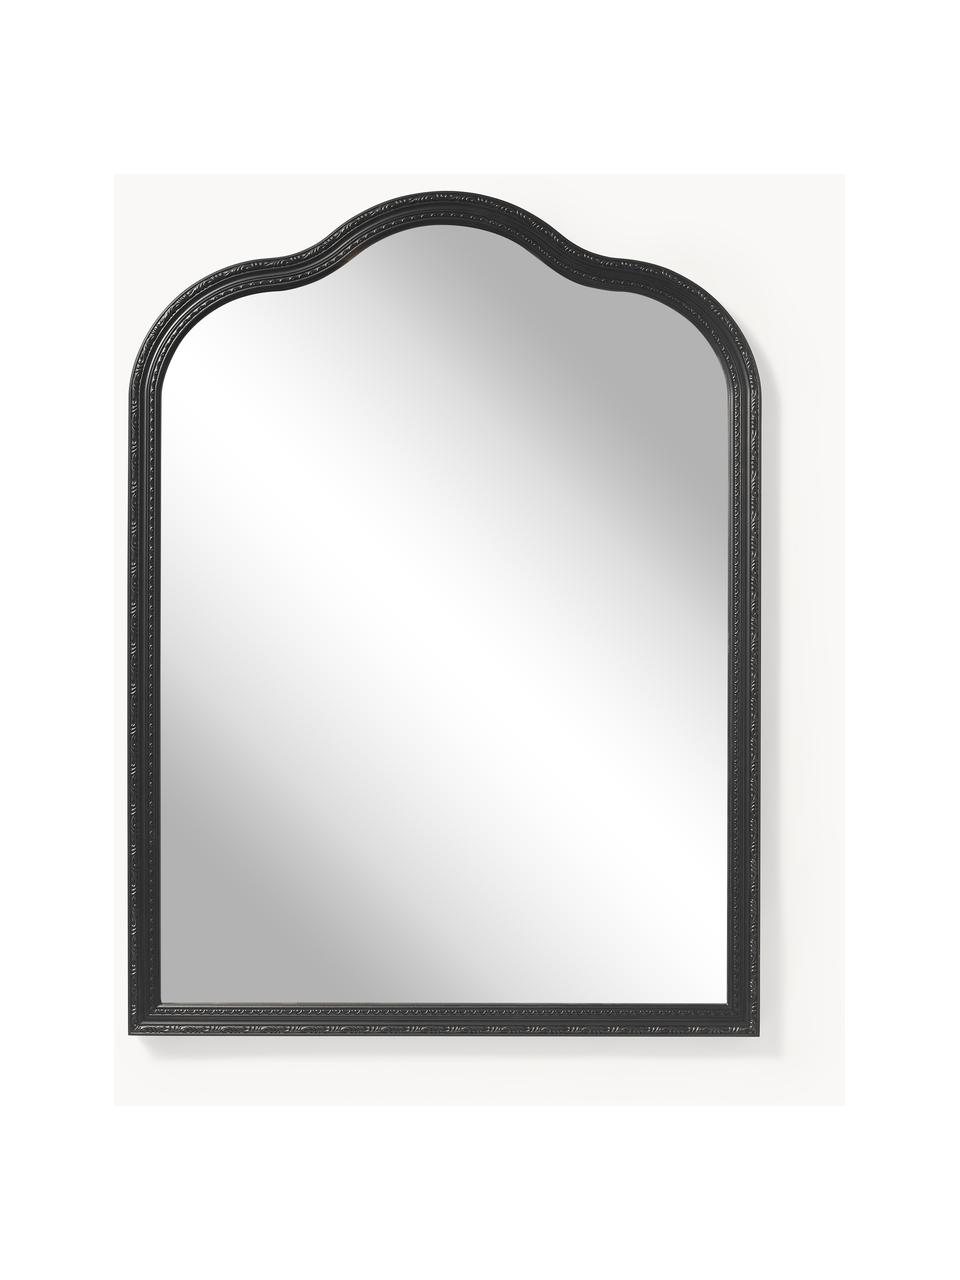 Barokní nástěnné zrcadlo Muriel, Černá, Š 90 cm, V 120 cm